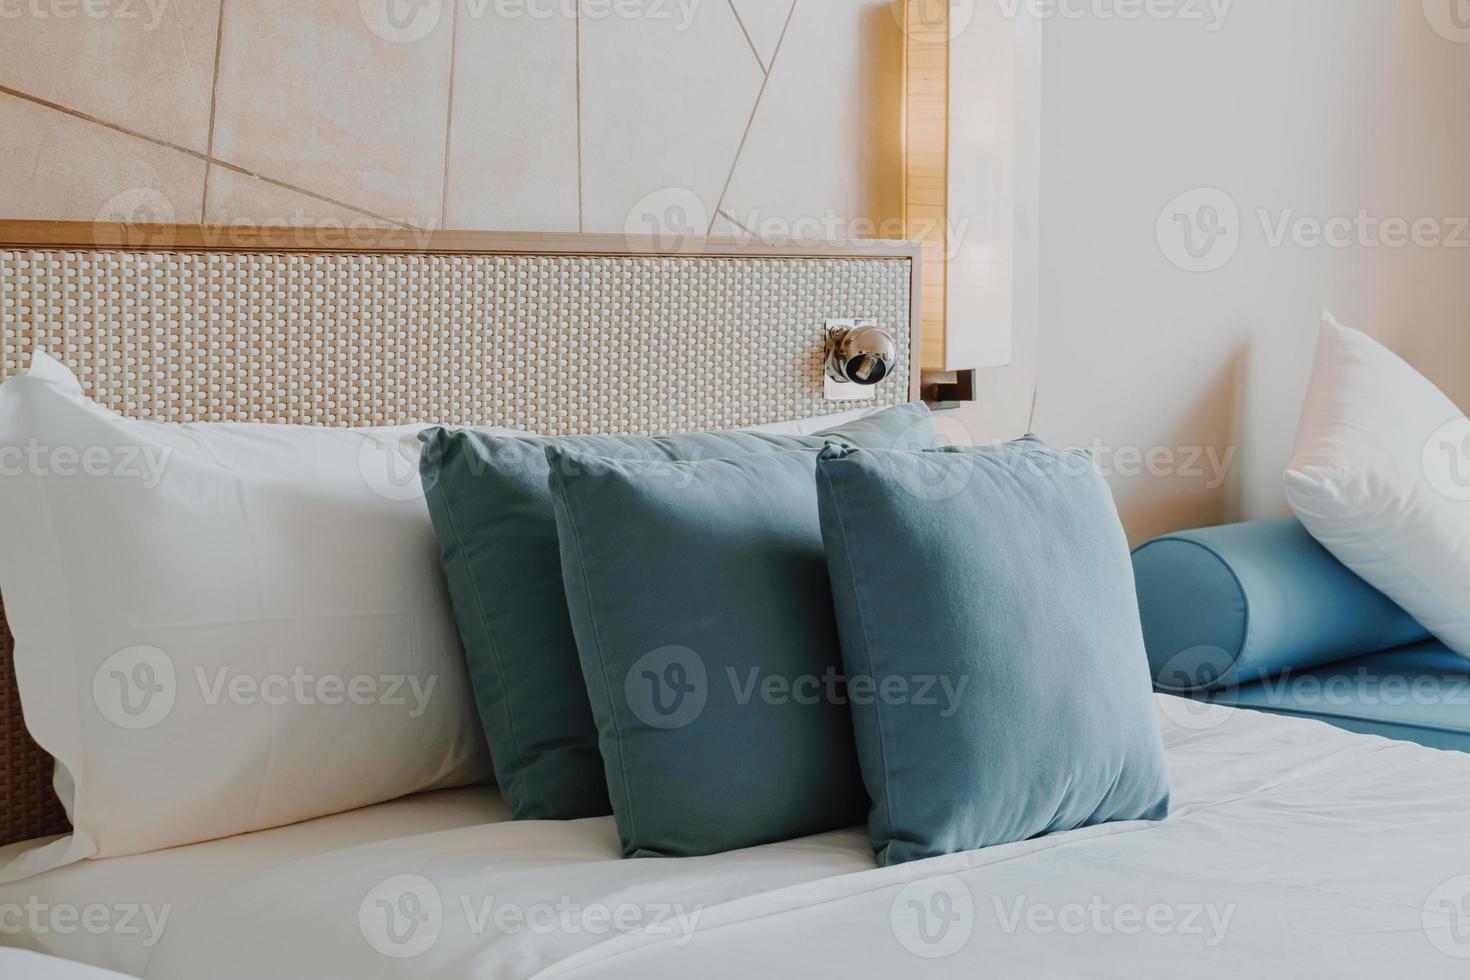 Hermosa y cómoda decoración de almohadas en el dormitorio. foto